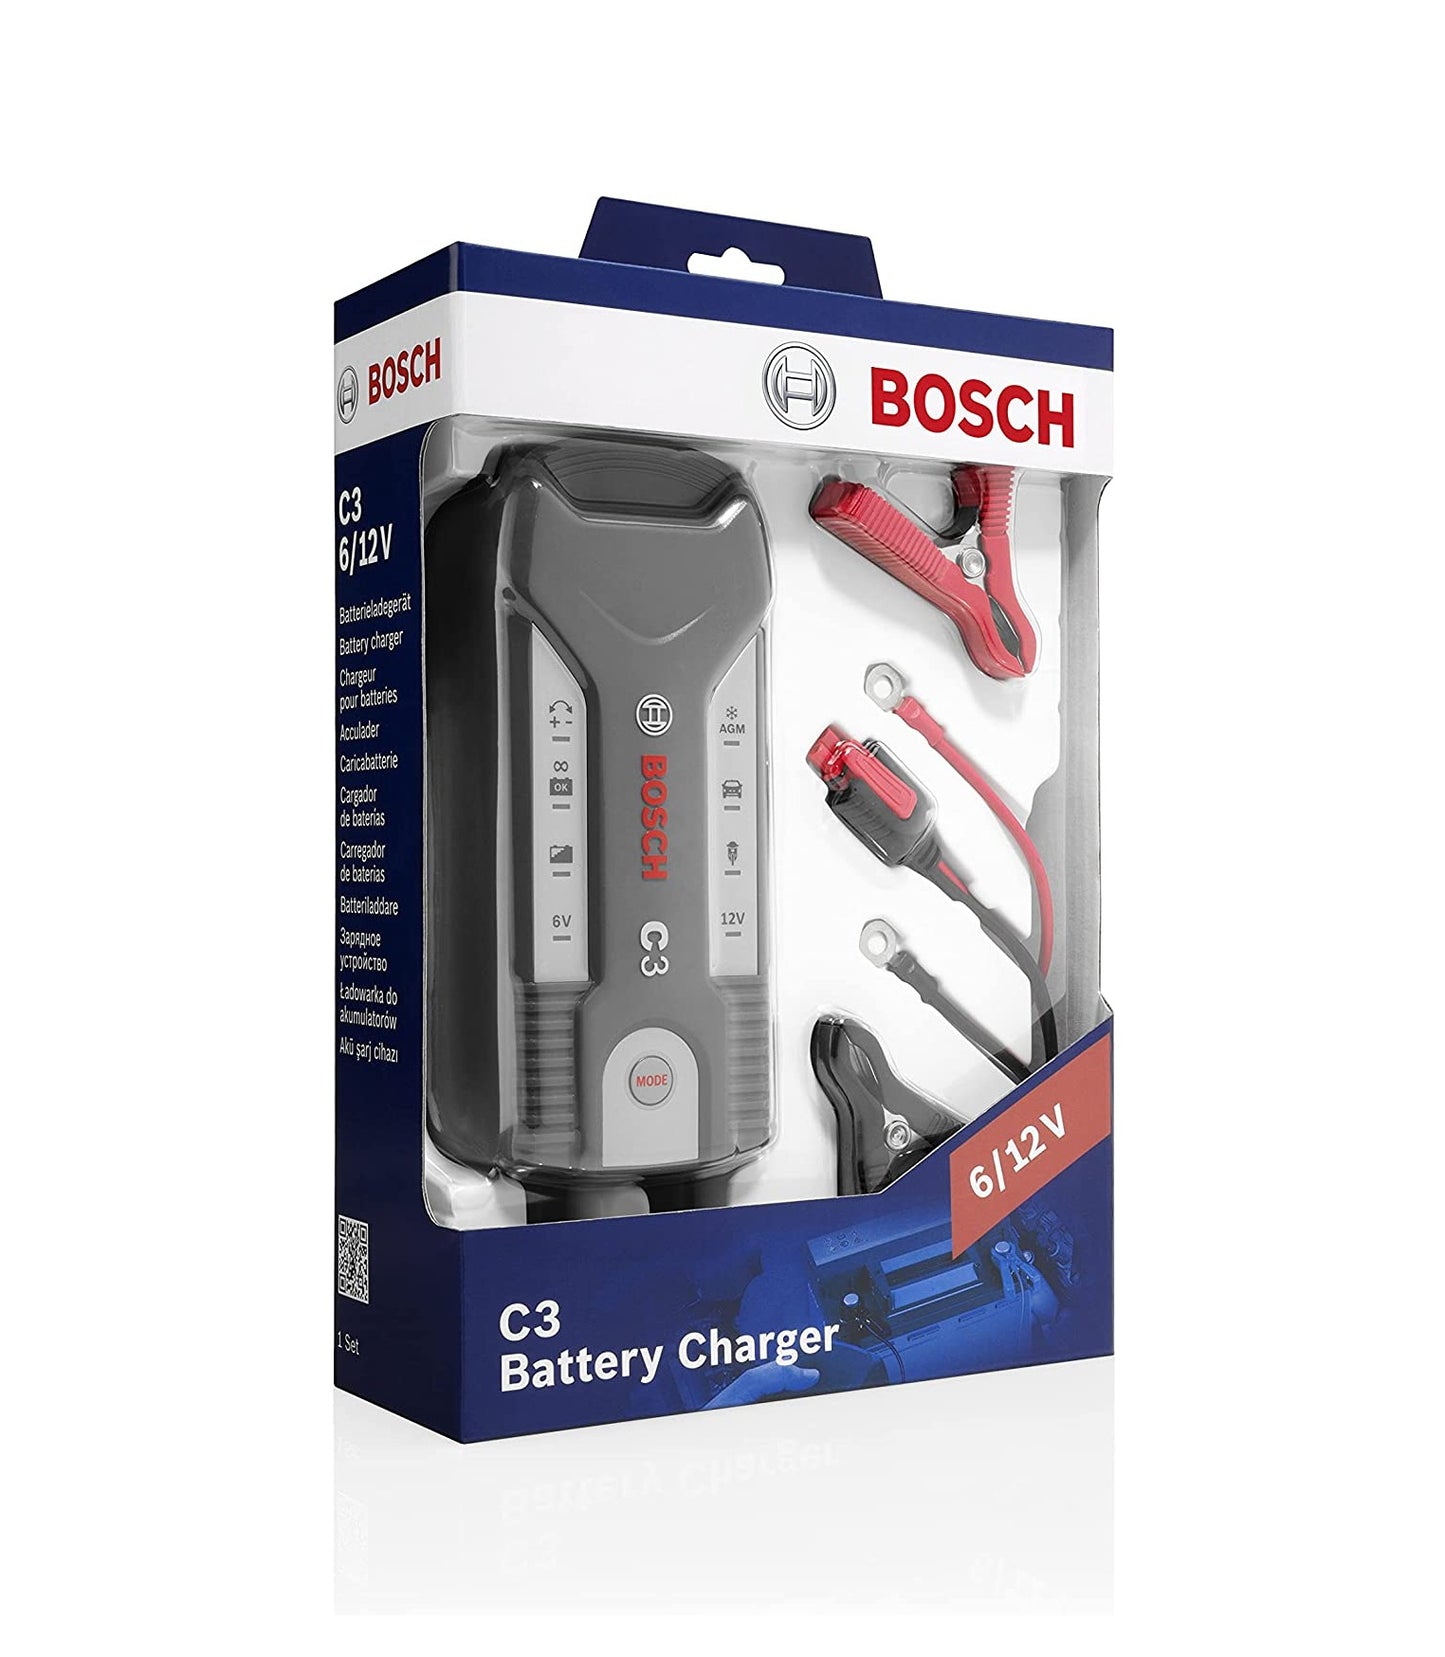  BOSCH C3 Fully Automatic 4-Mode 6/12V Smart Battery